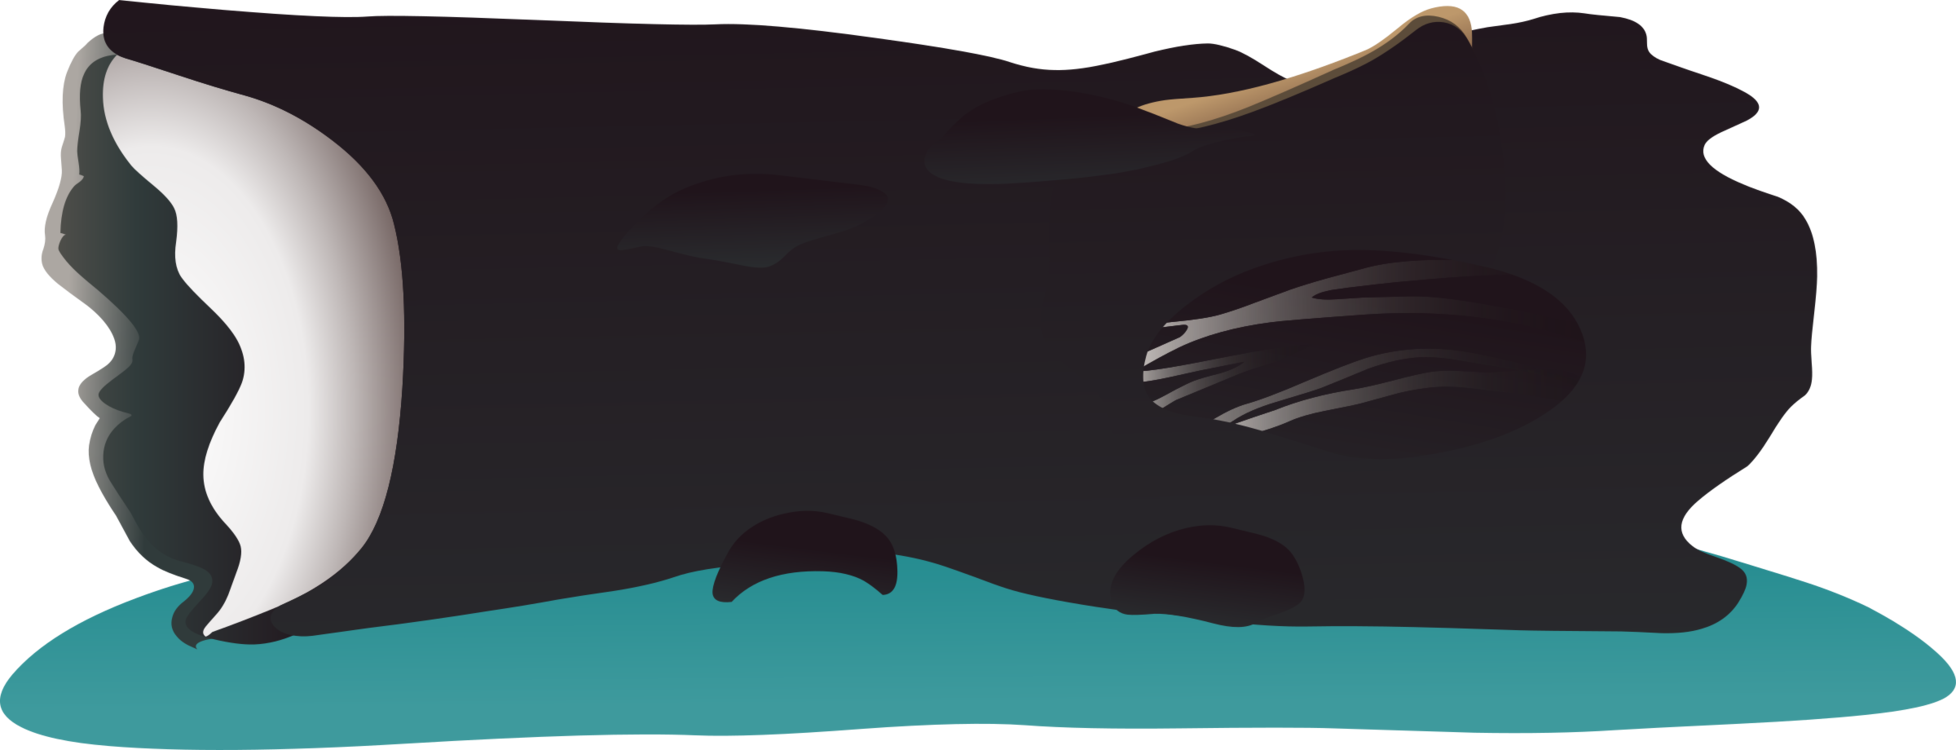 Manta Ray,Sperm Whale,Bowhead